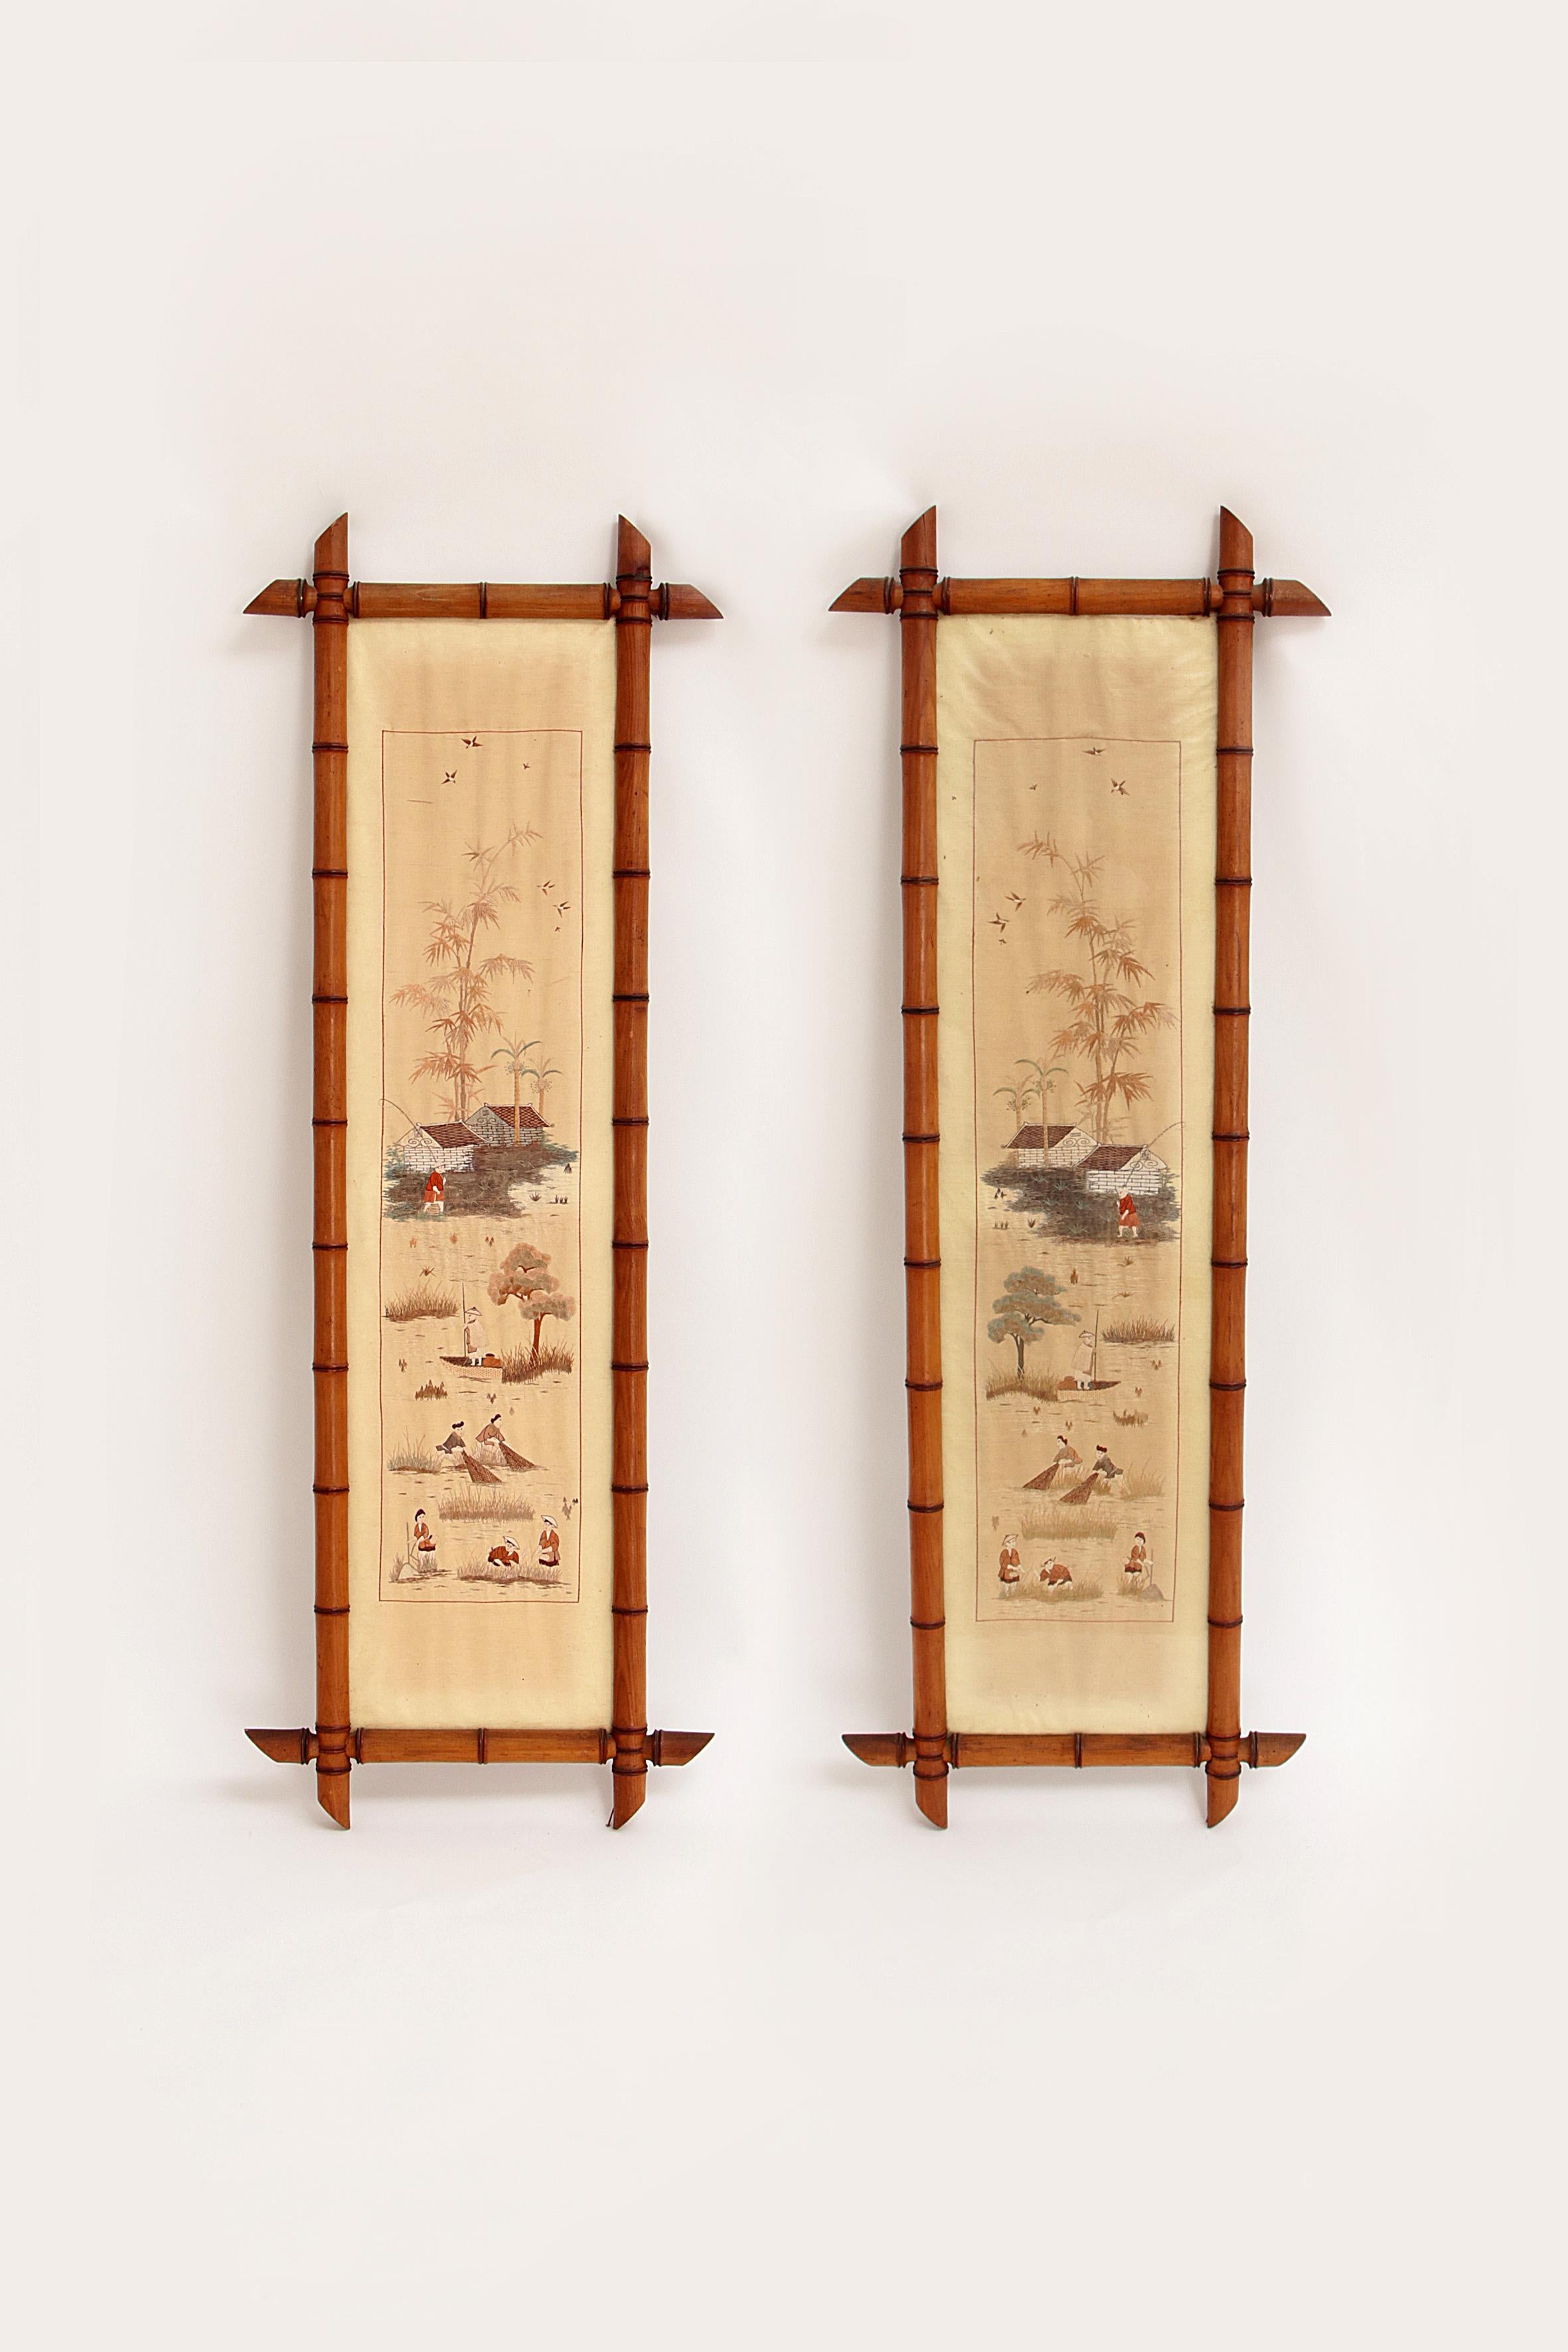 Chinesische Seidentapisserien aus dem 19. Jahrhundert, die vollständig von Hand gewebt oder gestickt wurden.

Links und rechts ist ein Fischerdorf dargestellt, in dem Frauen und Männer am Netz fischen.

Beide Bambusrahmen sind intakt, nur einer hat